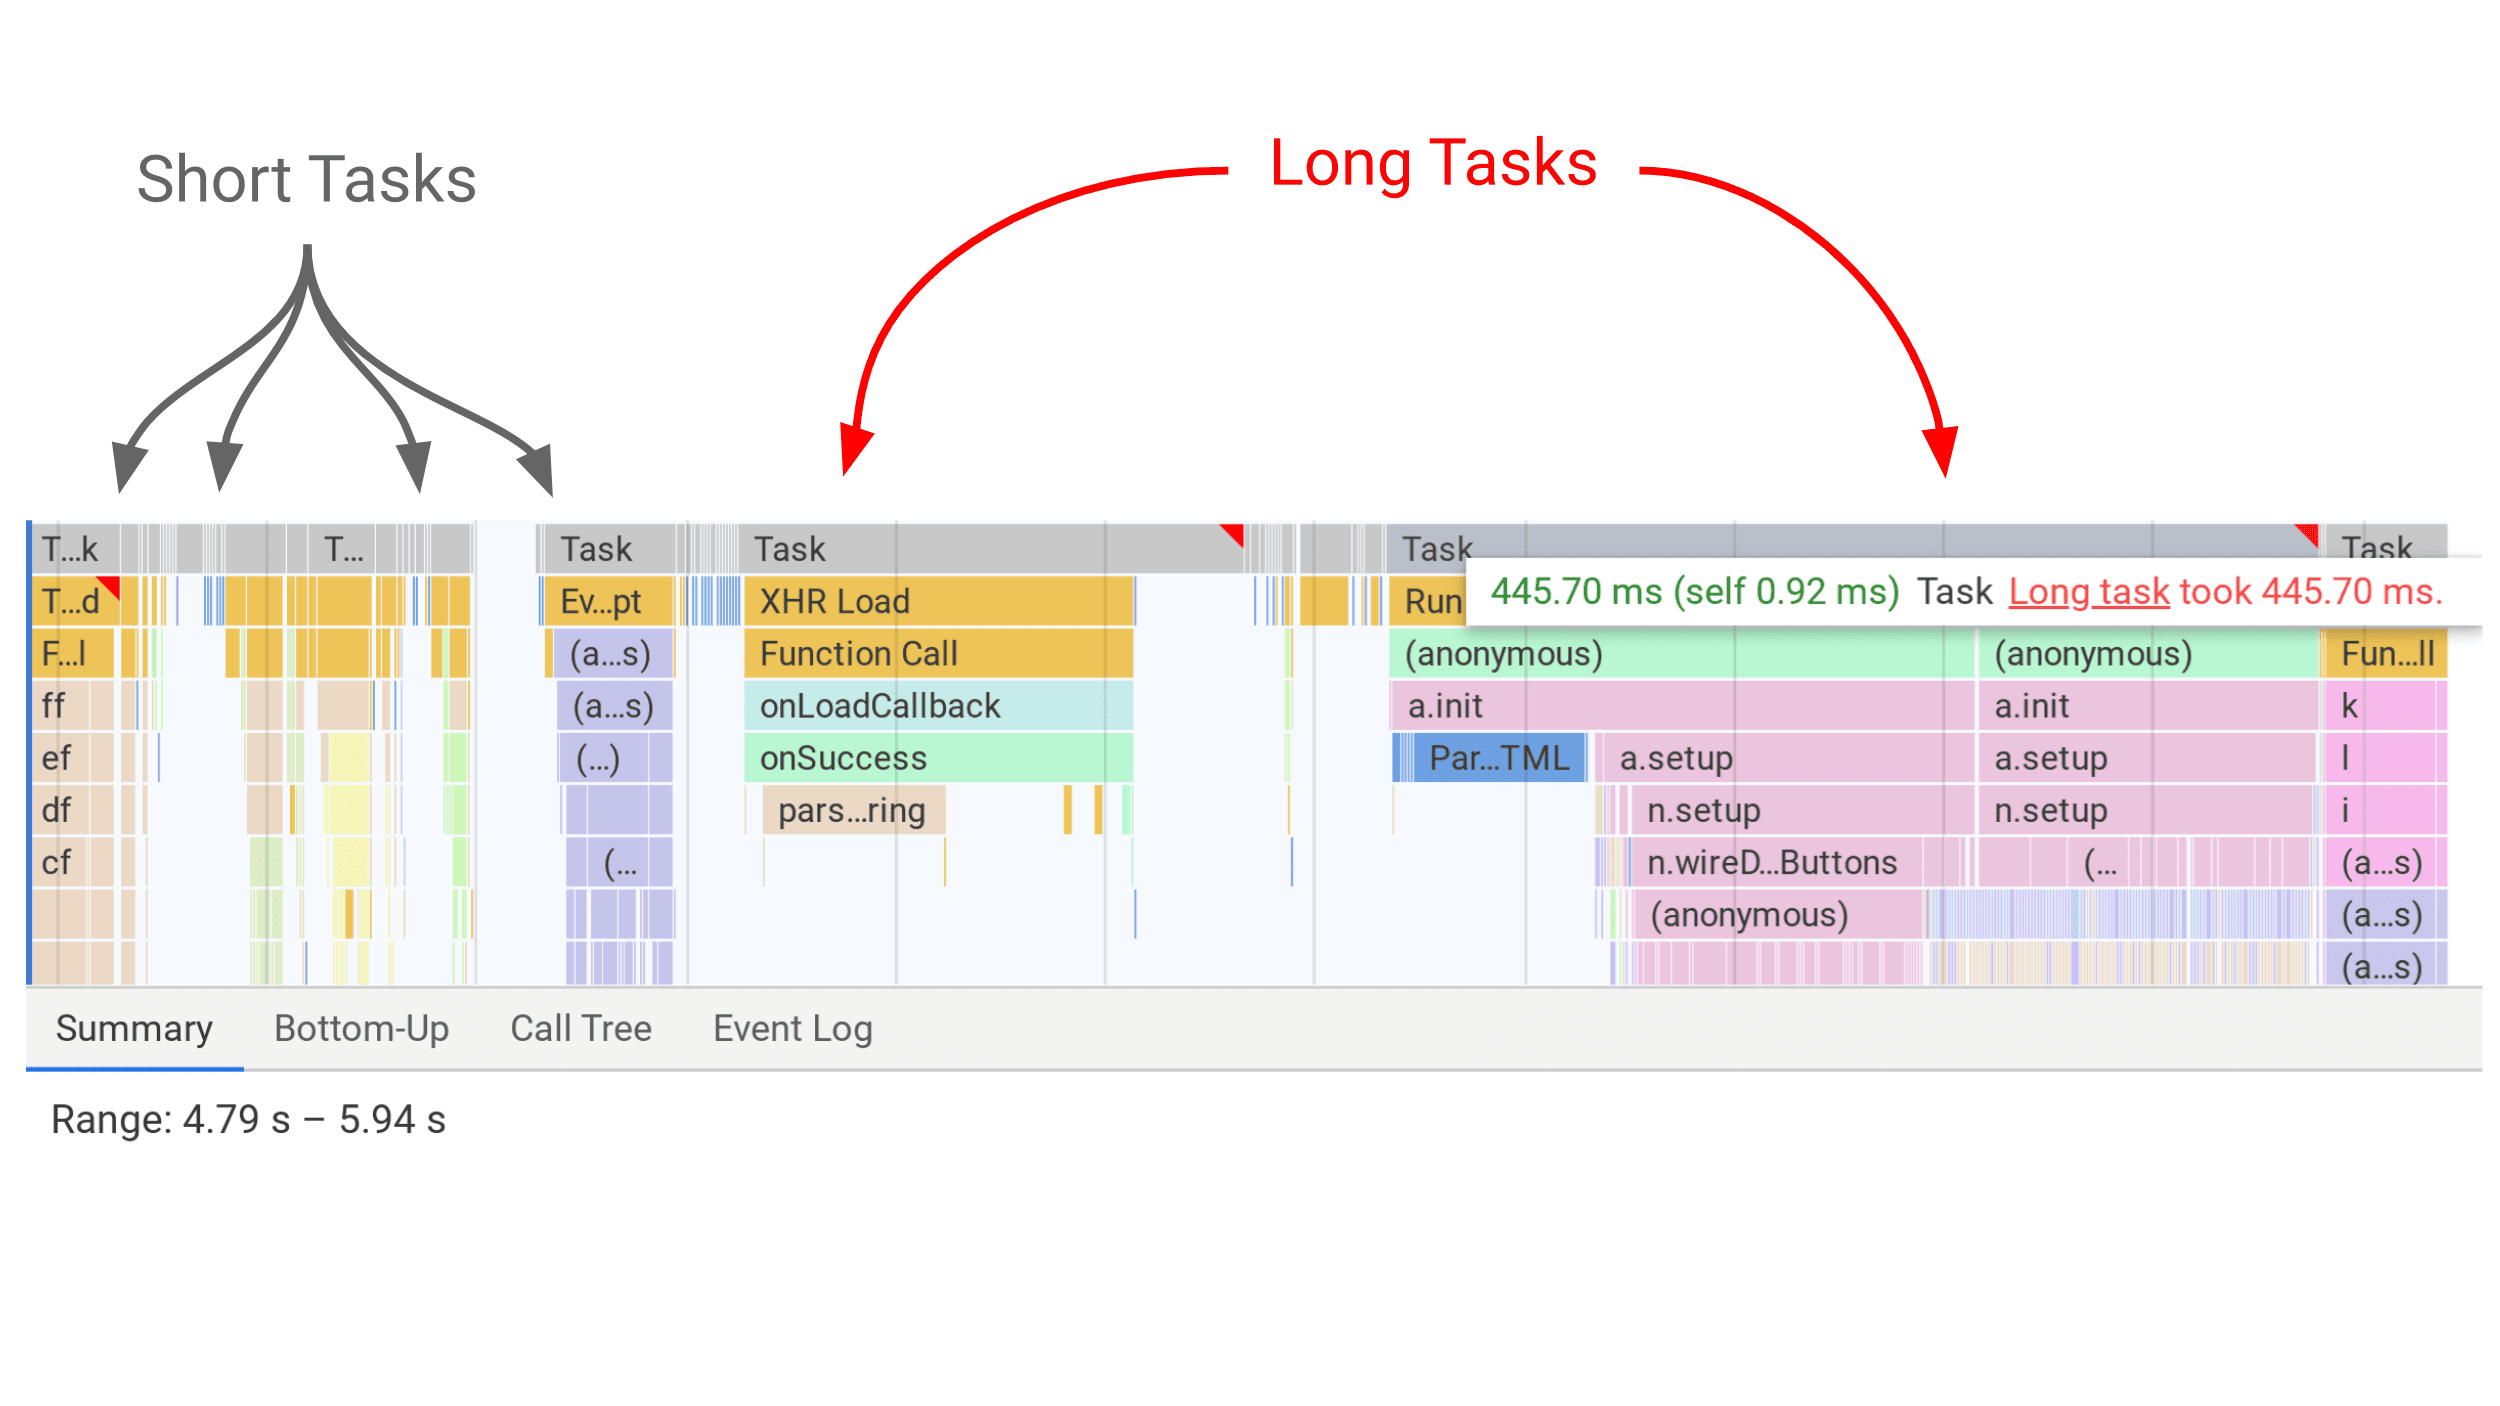 Công cụ cho nhà phát triển trực quan hoá các tác vụ dài dưới dạng thanh màu xám trong Bảng điều khiển hiệu suất có cờ đỏ đối với các tác vụ dài